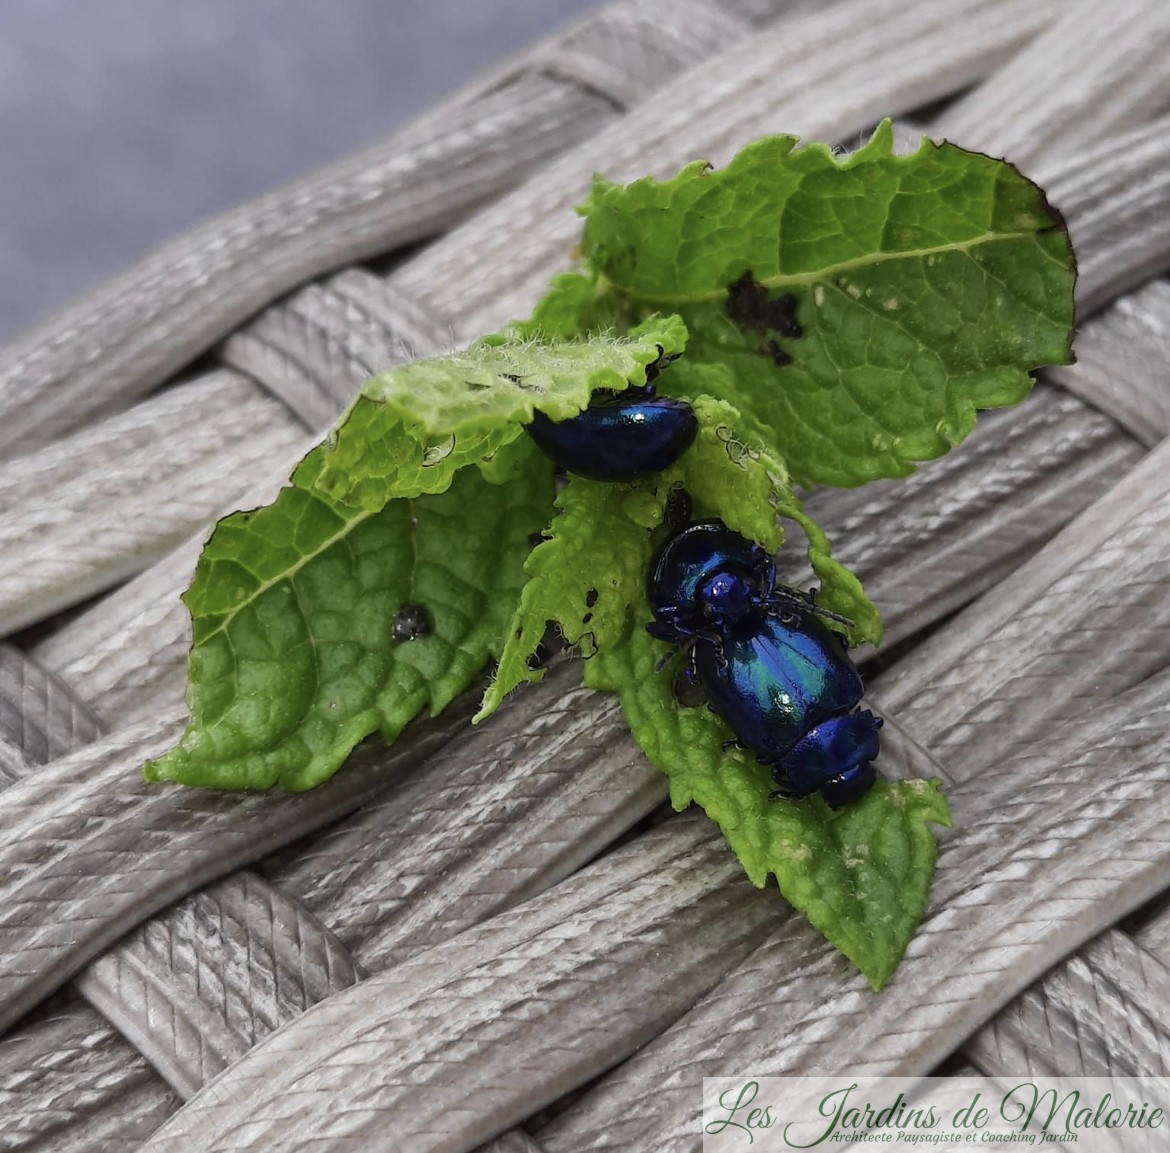 La coccinelle, un coléoptère méconnu - France Bleu